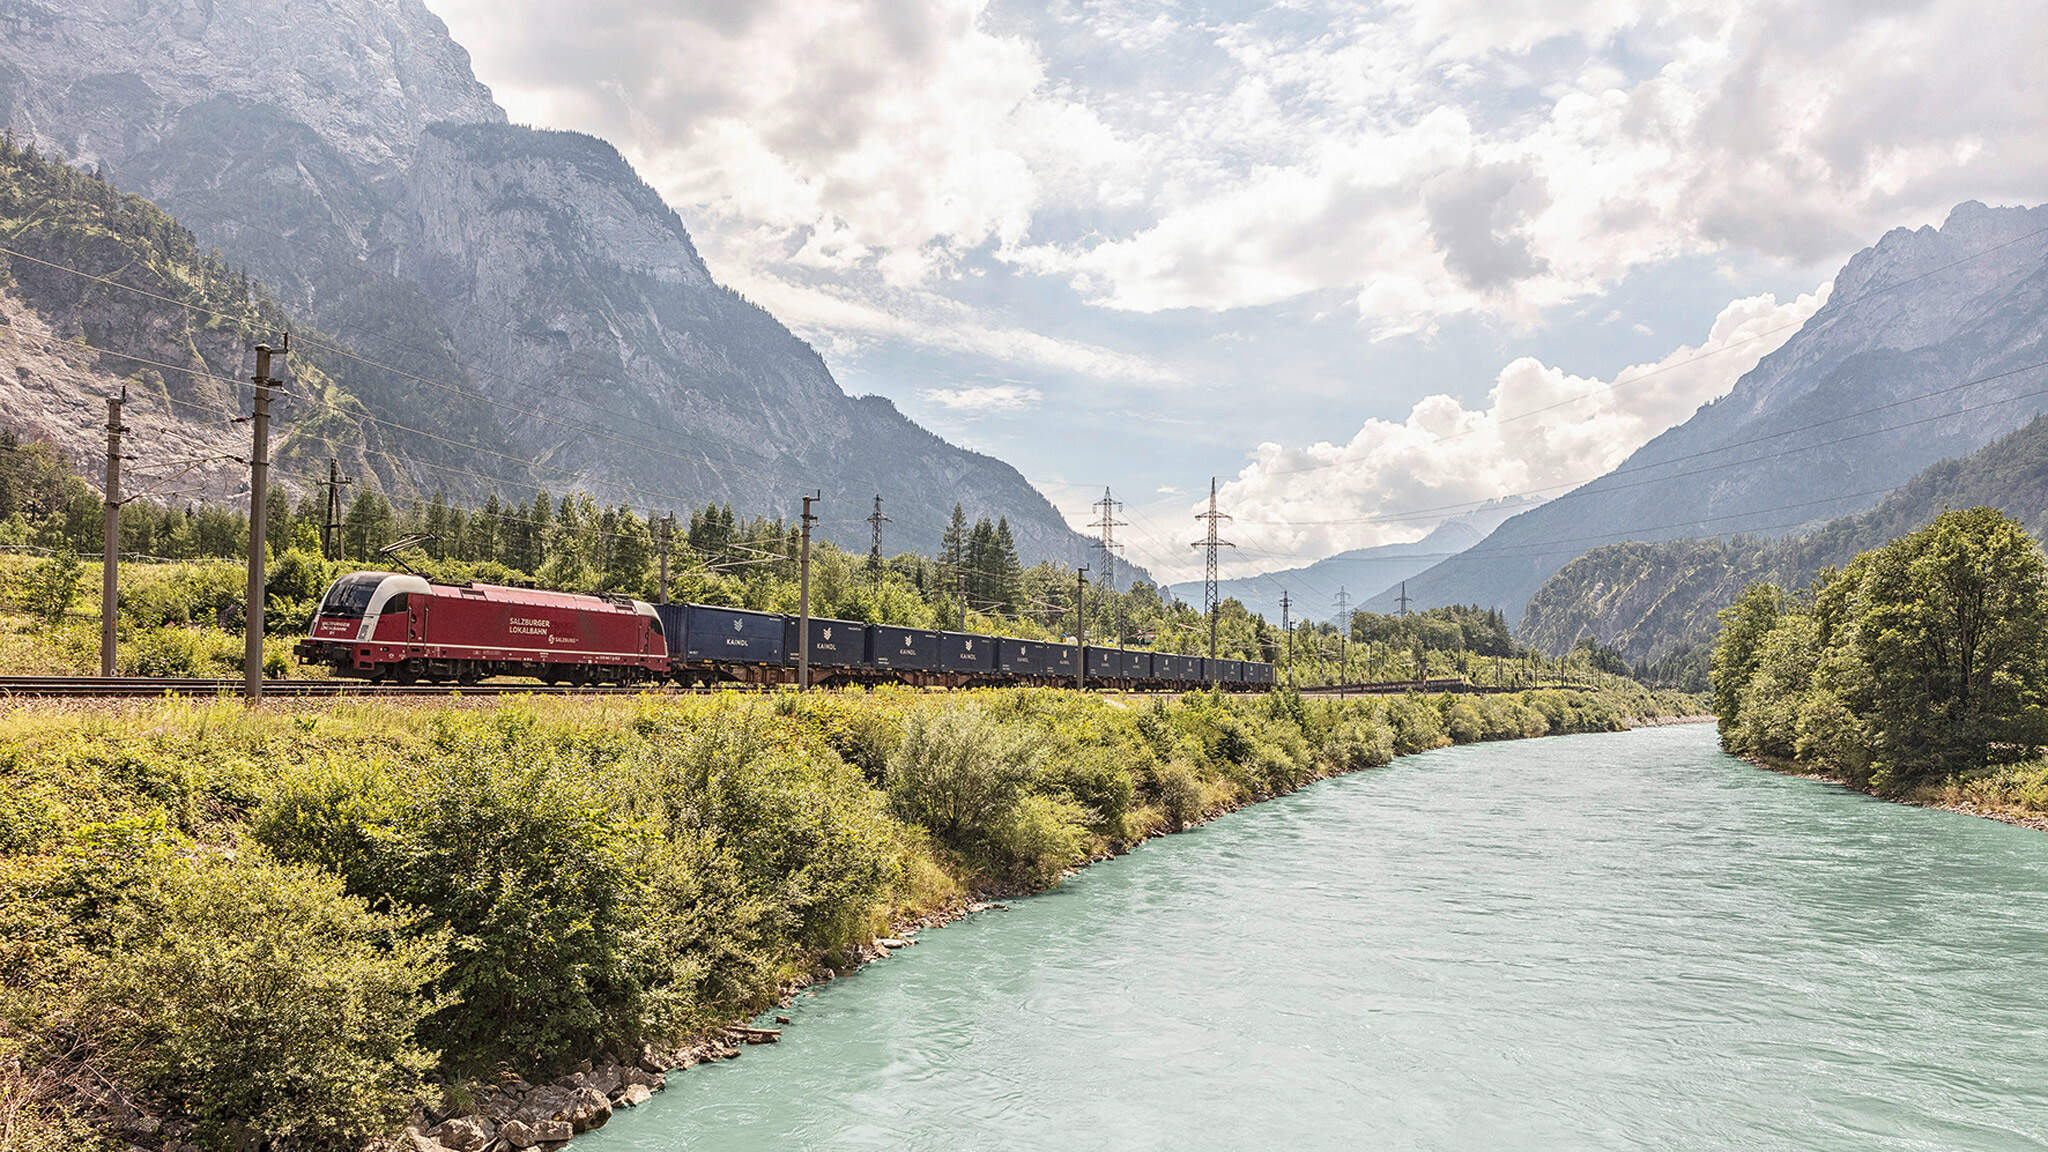  De camino a los mercados internacionales: el tren Kaindl